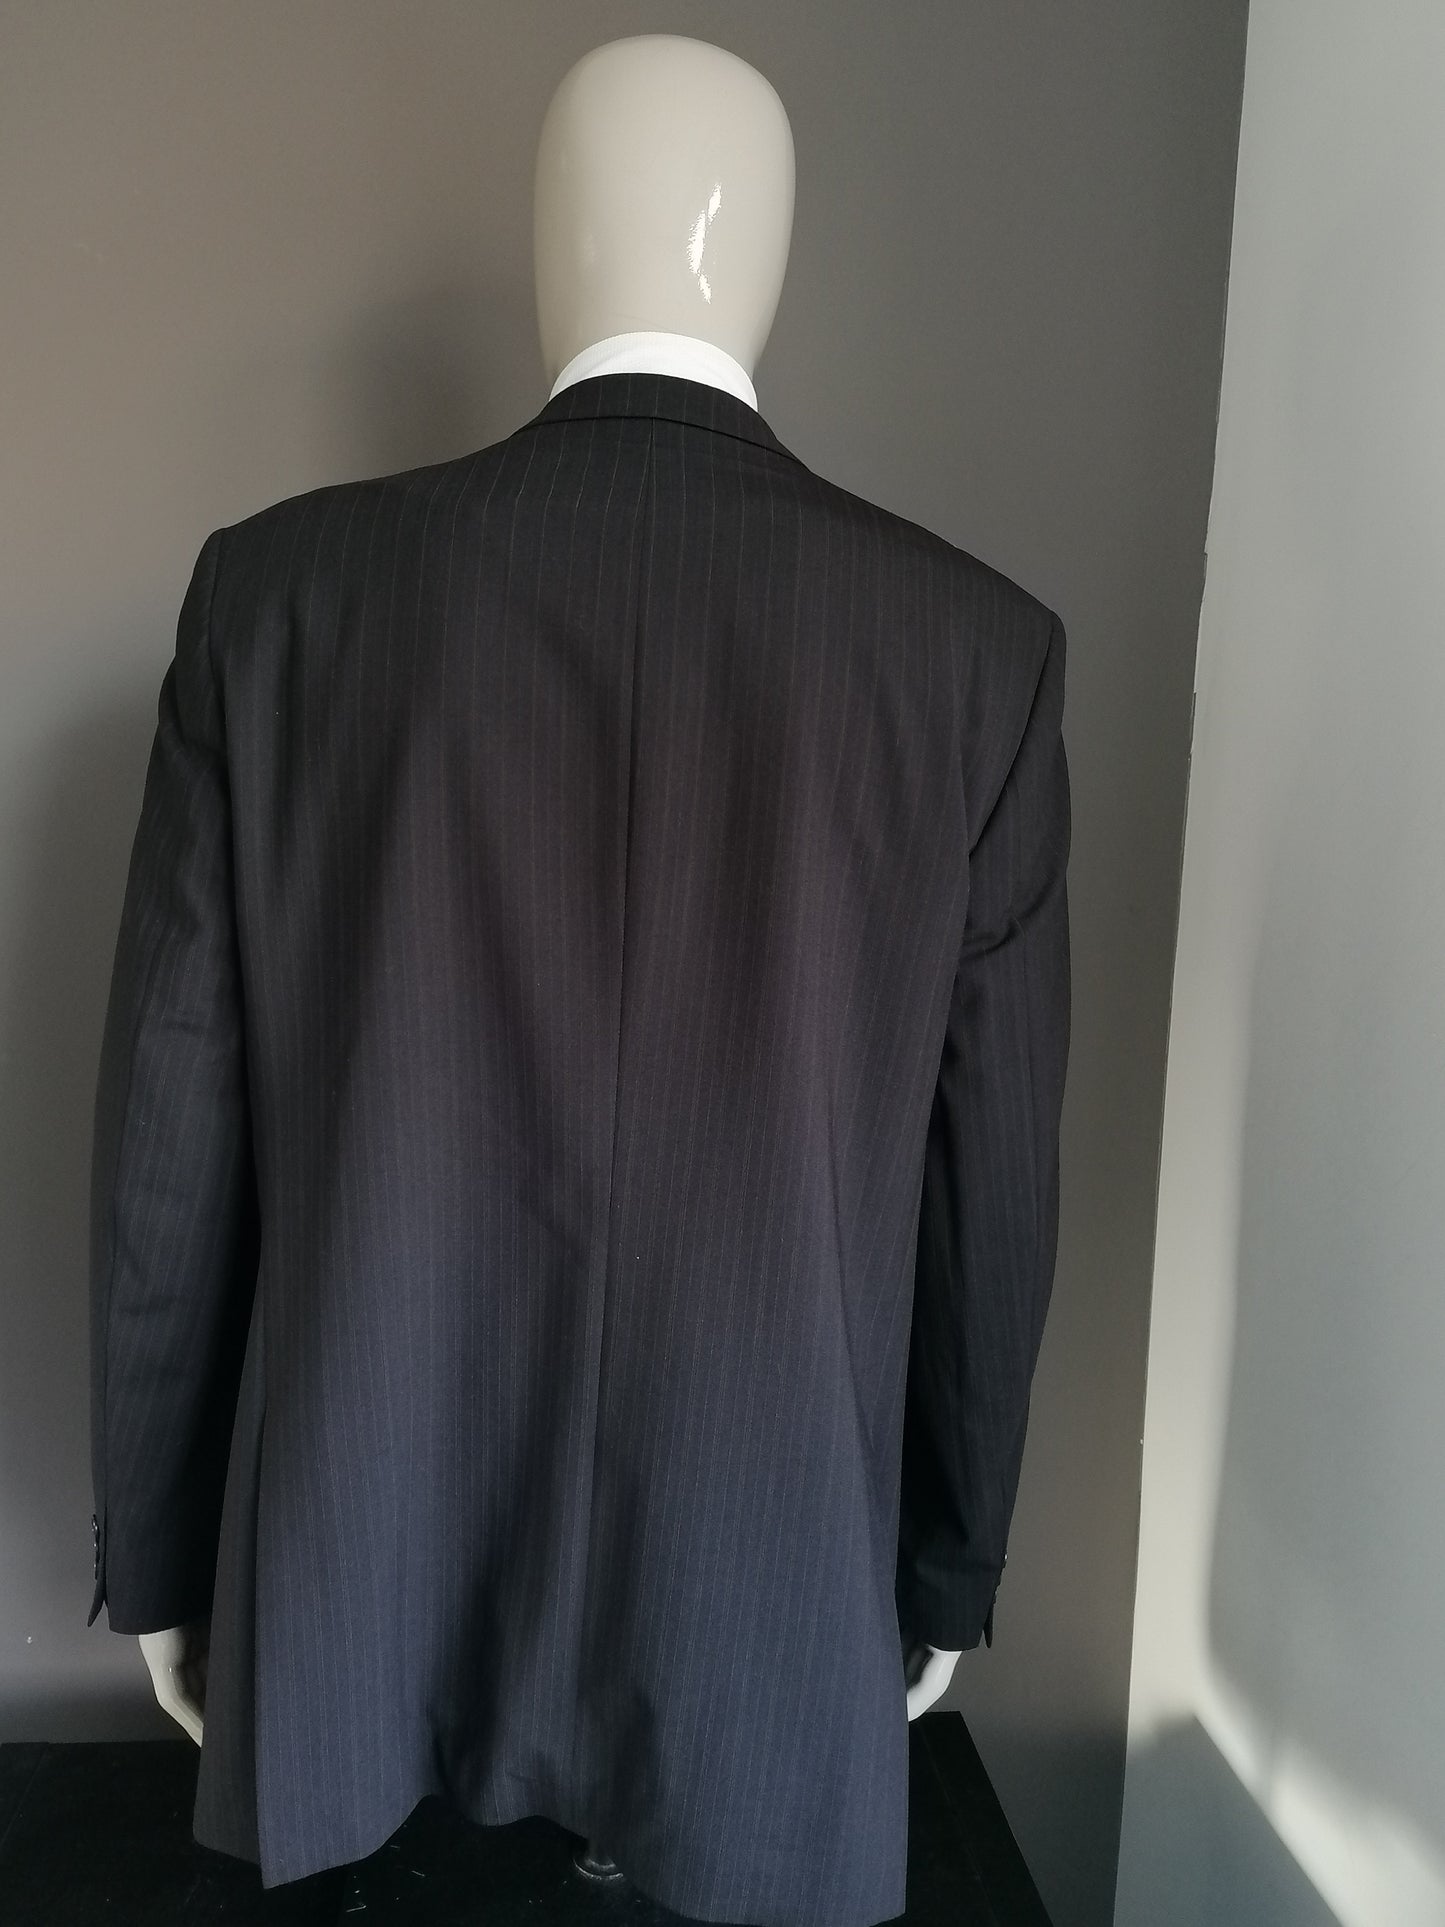 Marks & Spencer SP Woolen Jacket. Rayas de color marrón oscuro. Modelo largo. Tamaño 56 / xl.